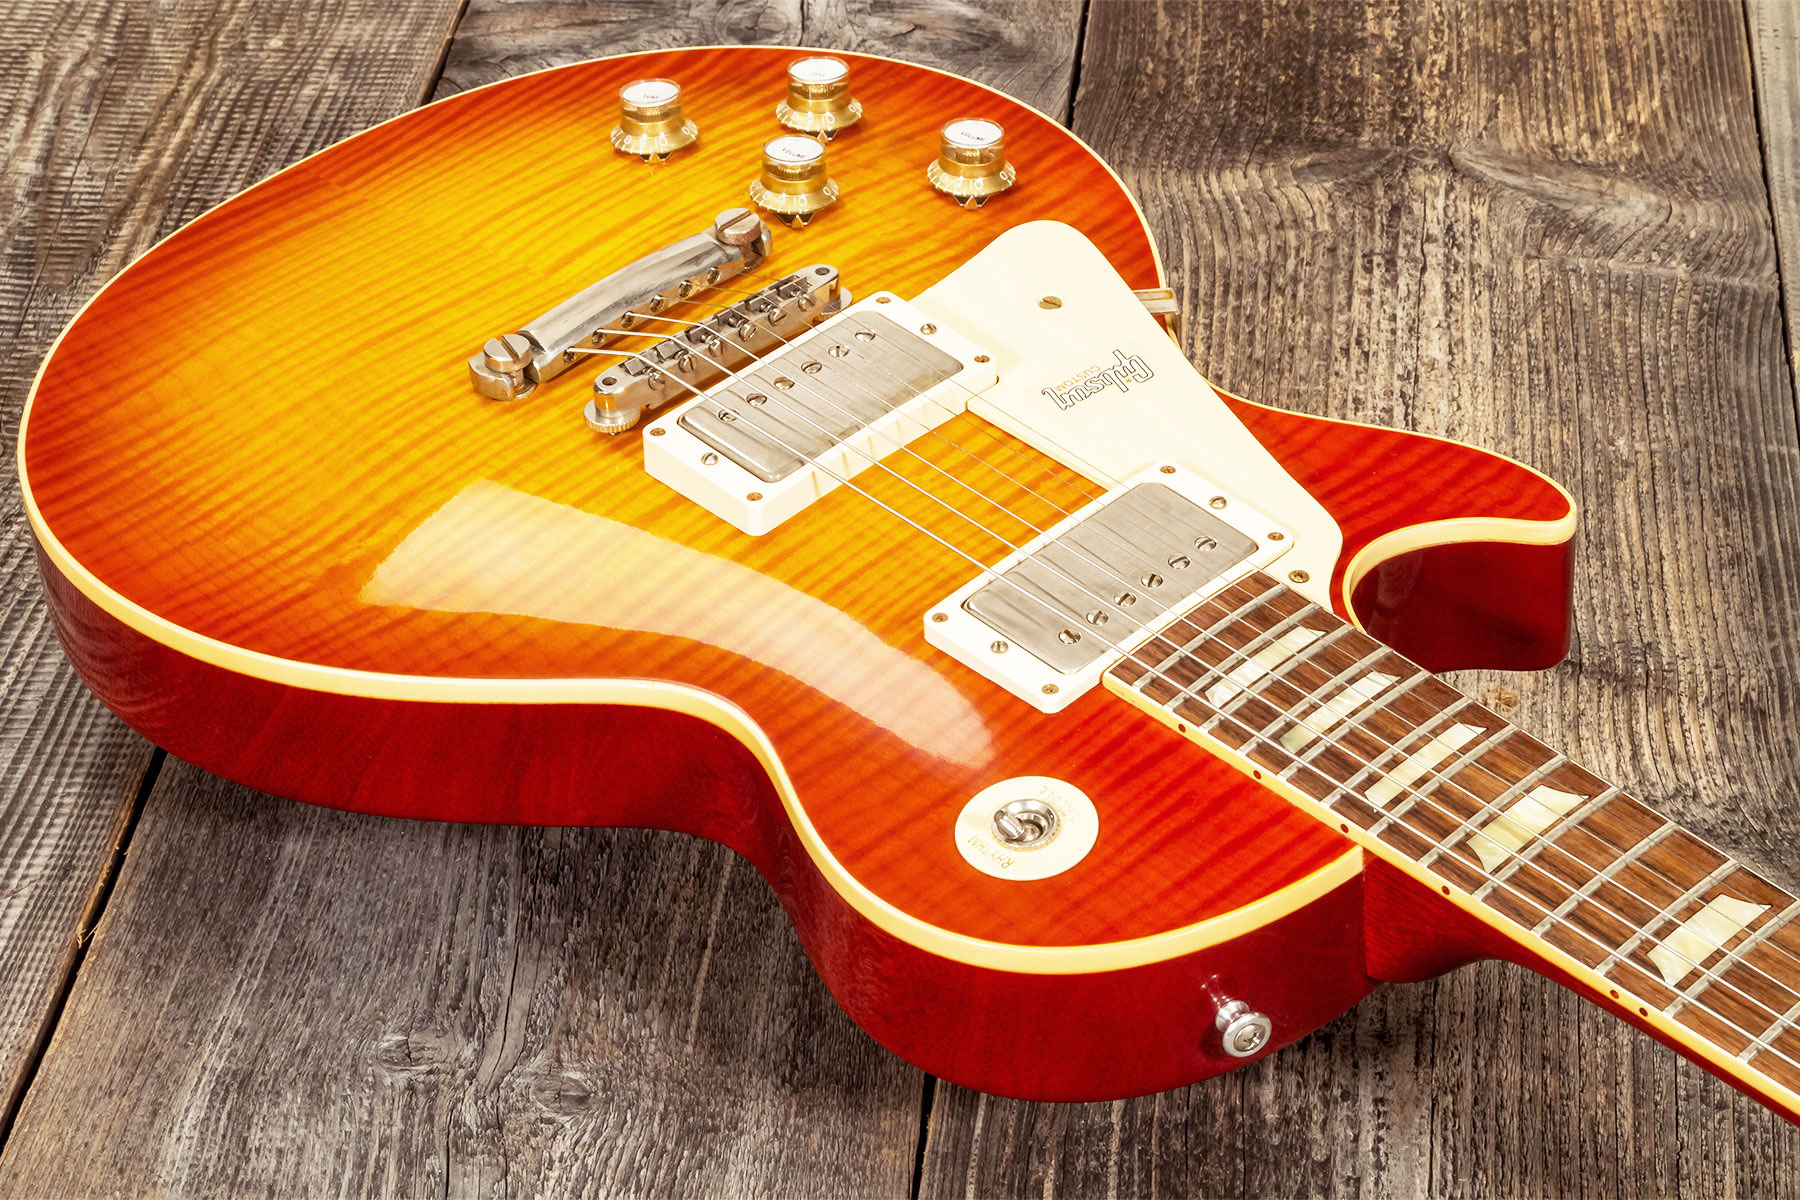 Gibson Custom Shop Les Paul Standard 1960 Reissue Lh Gaucher 2h Ht Rw #09122 - Vos Tangerine Burst - Linkshandige elektrische gitaar - Variation 2